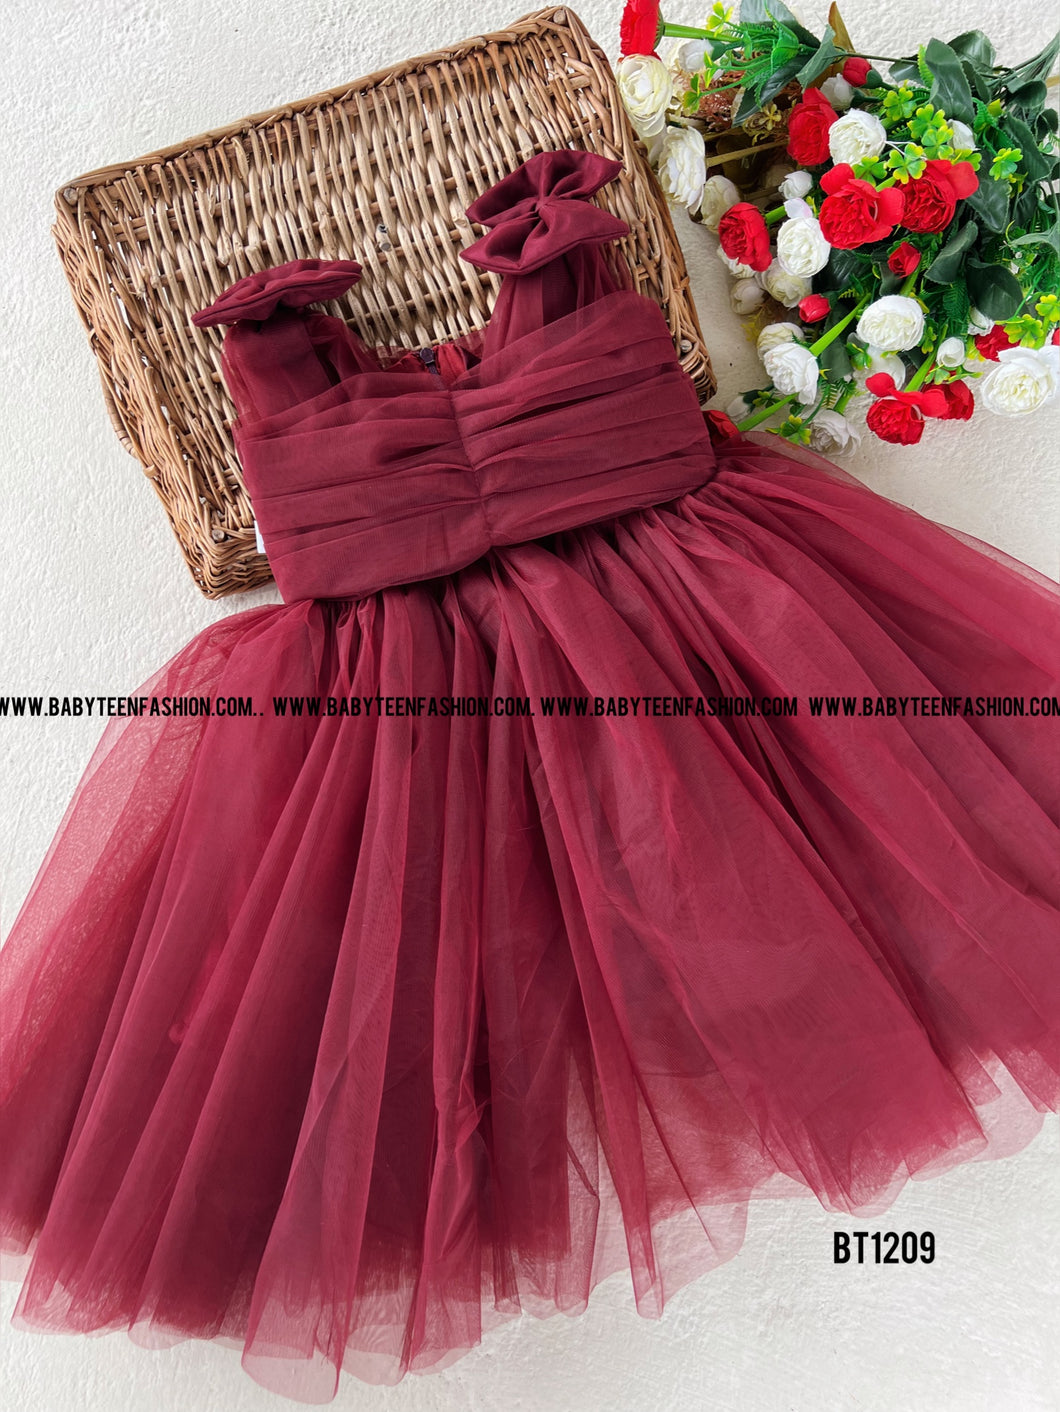 BT1209 Rustic Ruby Elegance Dress - A Symphony in Maroon